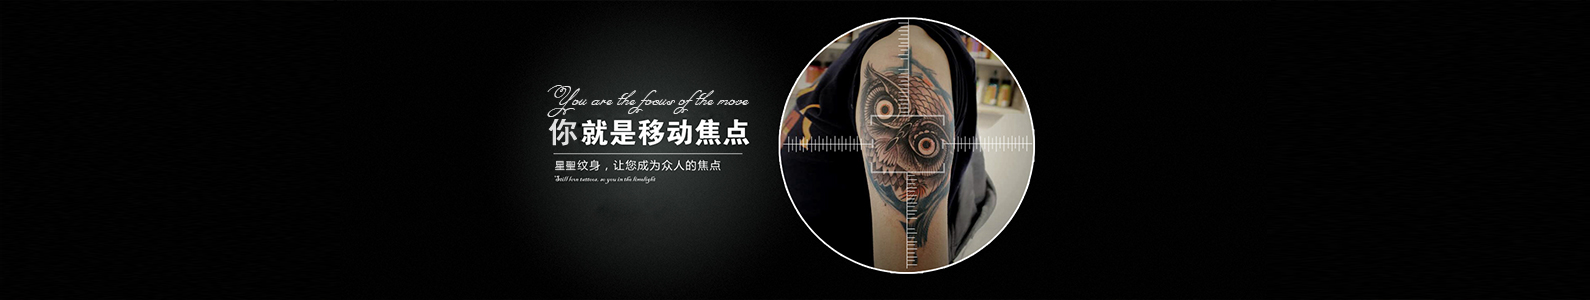 贵州纹身培训机构讲述纹身对身体的几大危害